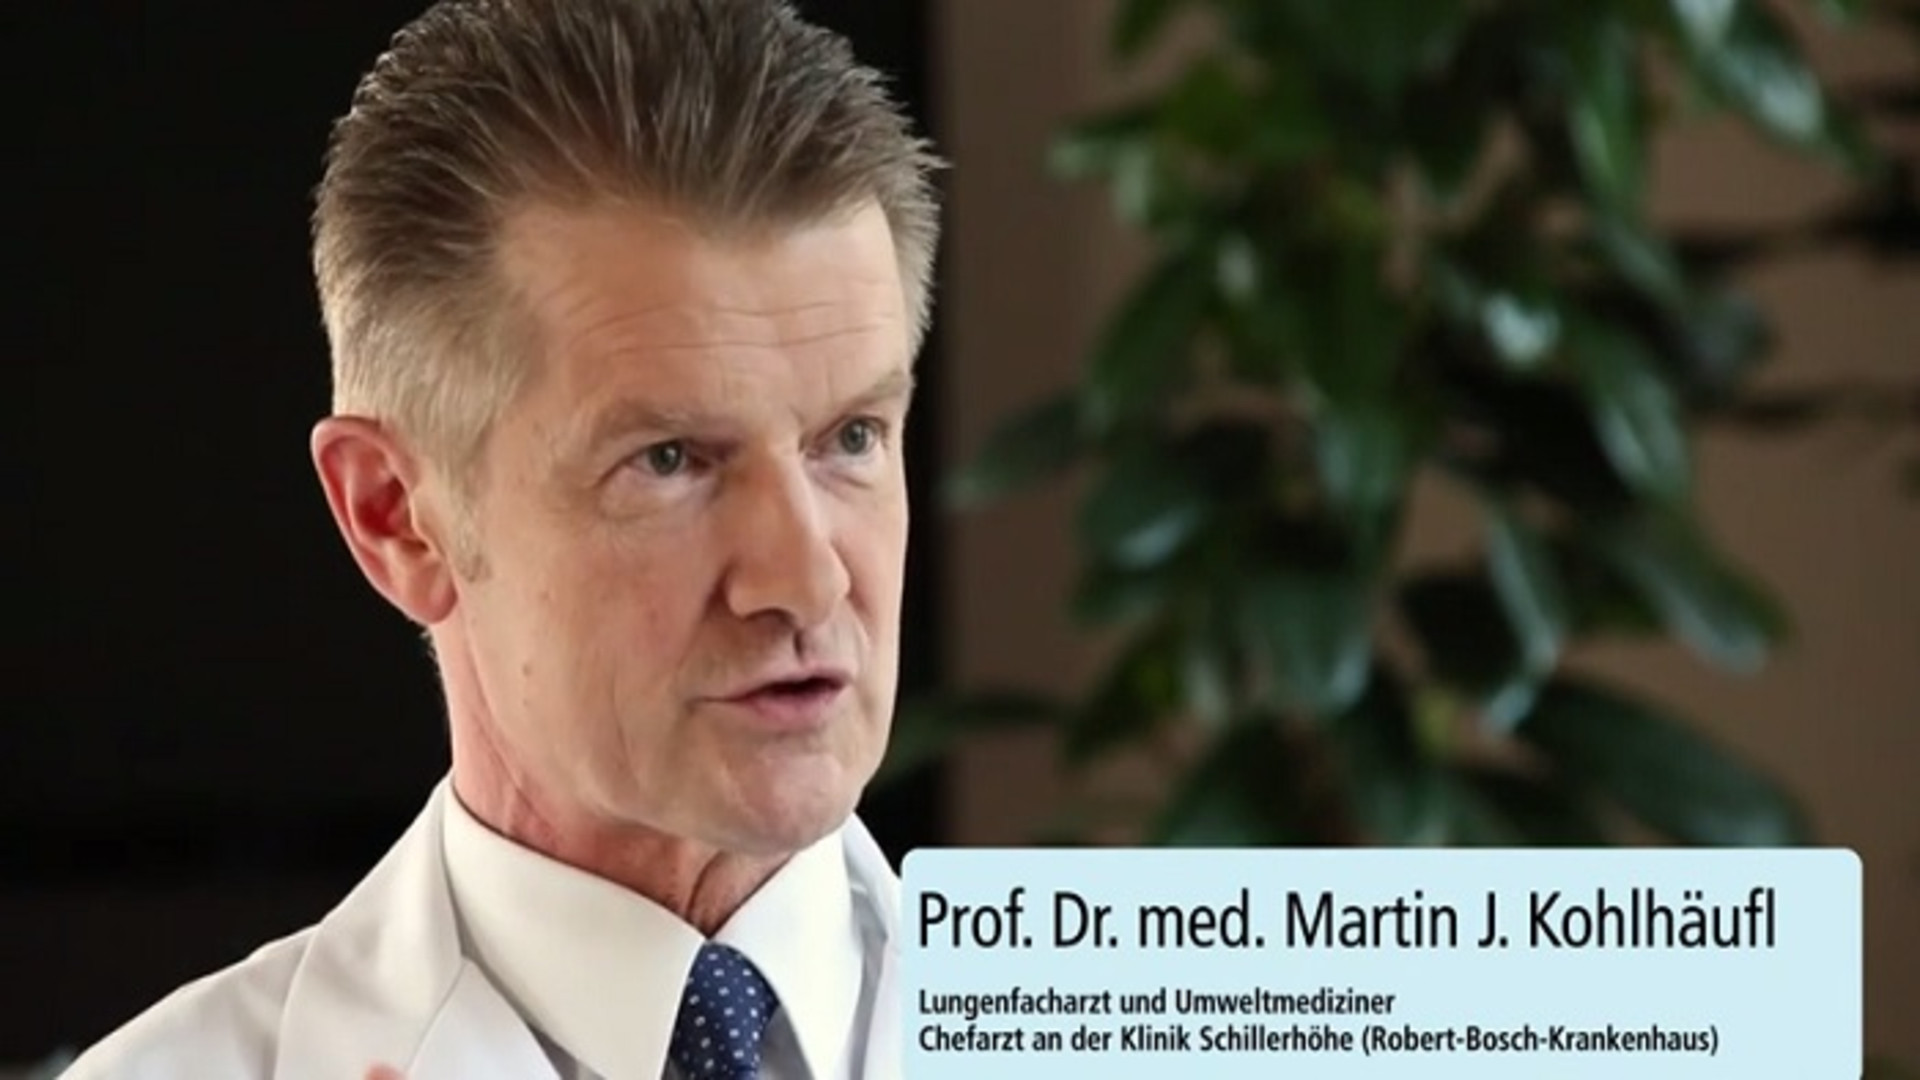 Prof. Dr. med. Martin J. Kohlhäufl, Lungenfacharzt und Umweltmediziner, erklärt im Gespräch, welche Gesundheitsgefahren von einer zu hohen Feinstaubbelastung ausgehen können.